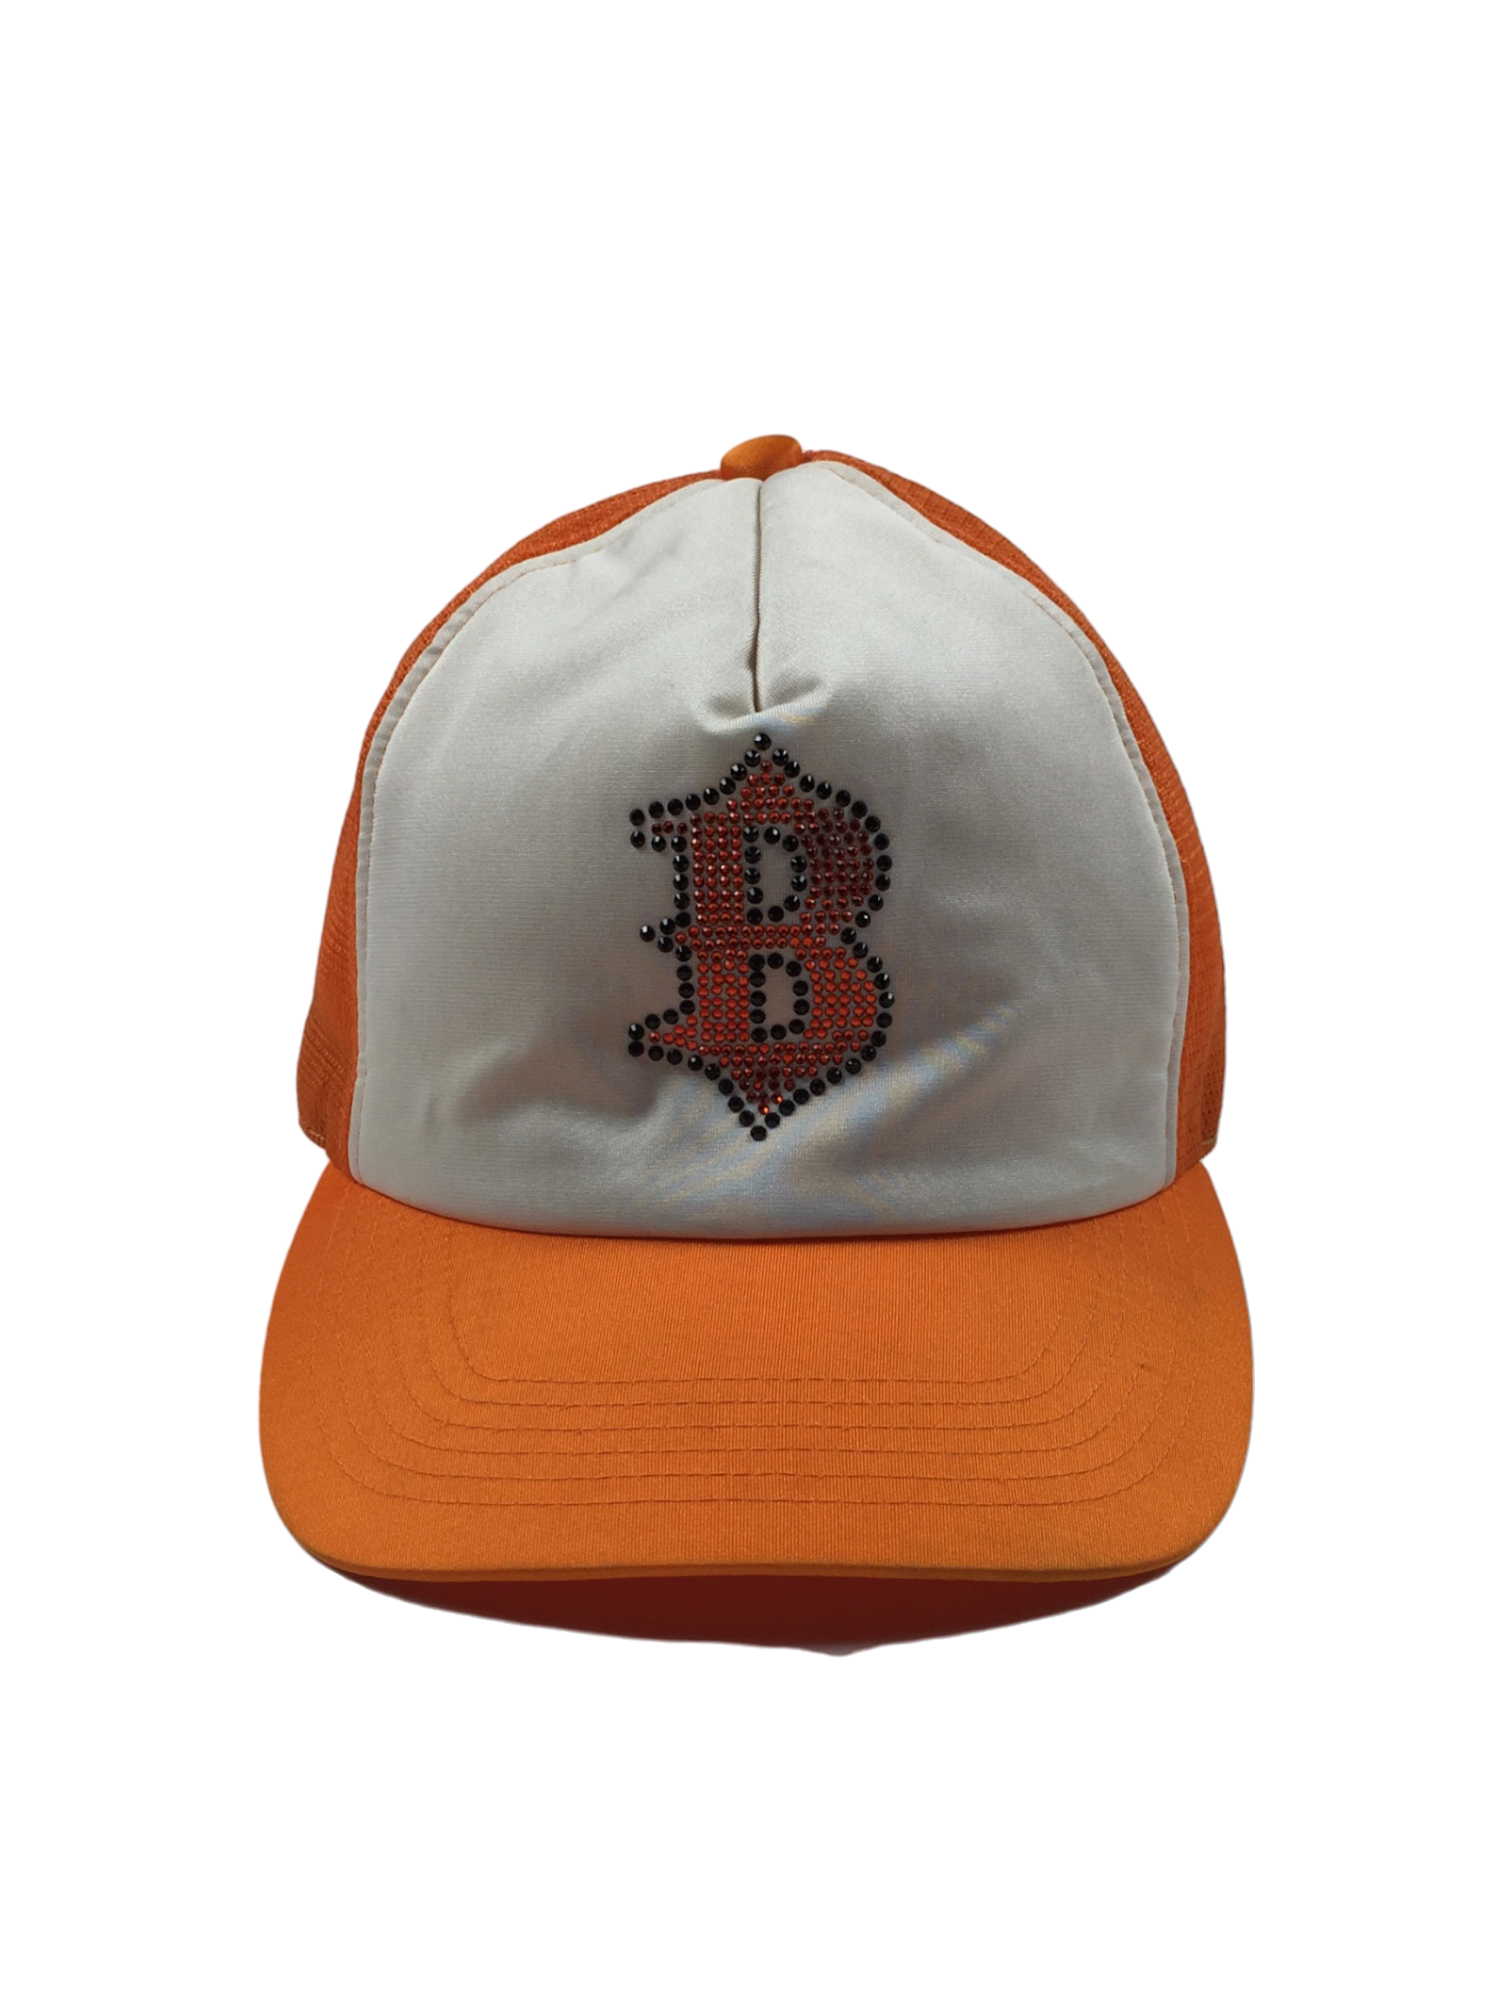 BAPE x Swarovski Orange Cap